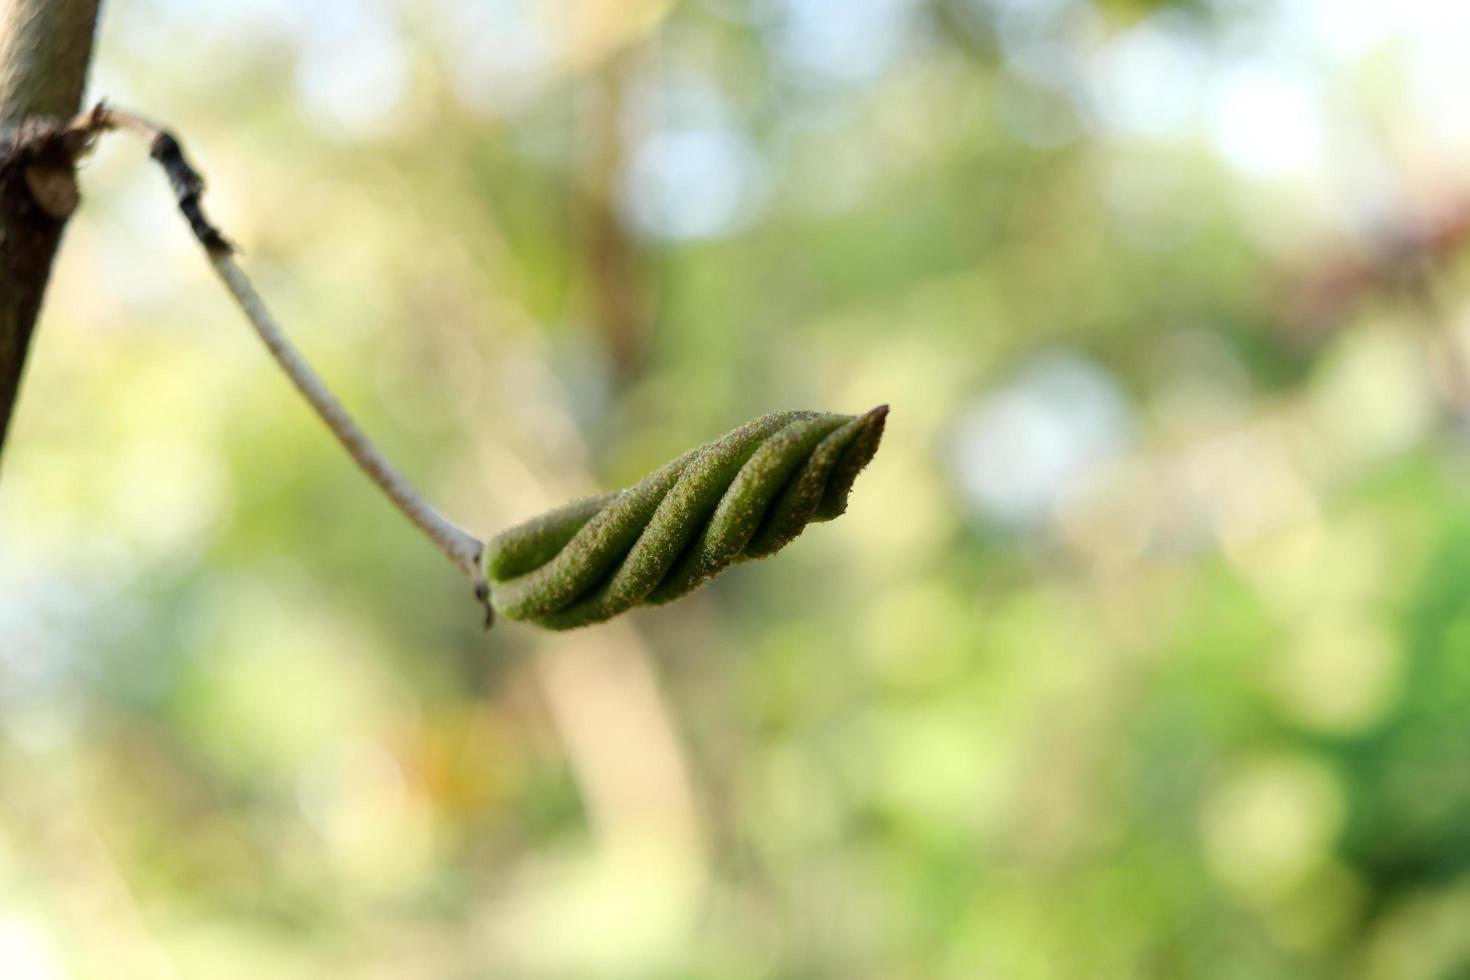 sementes verdes jovens da árvore de parafuso do leste indiano estão no galho e desfocam o fundo, use curar diarréia na tailândia. foto